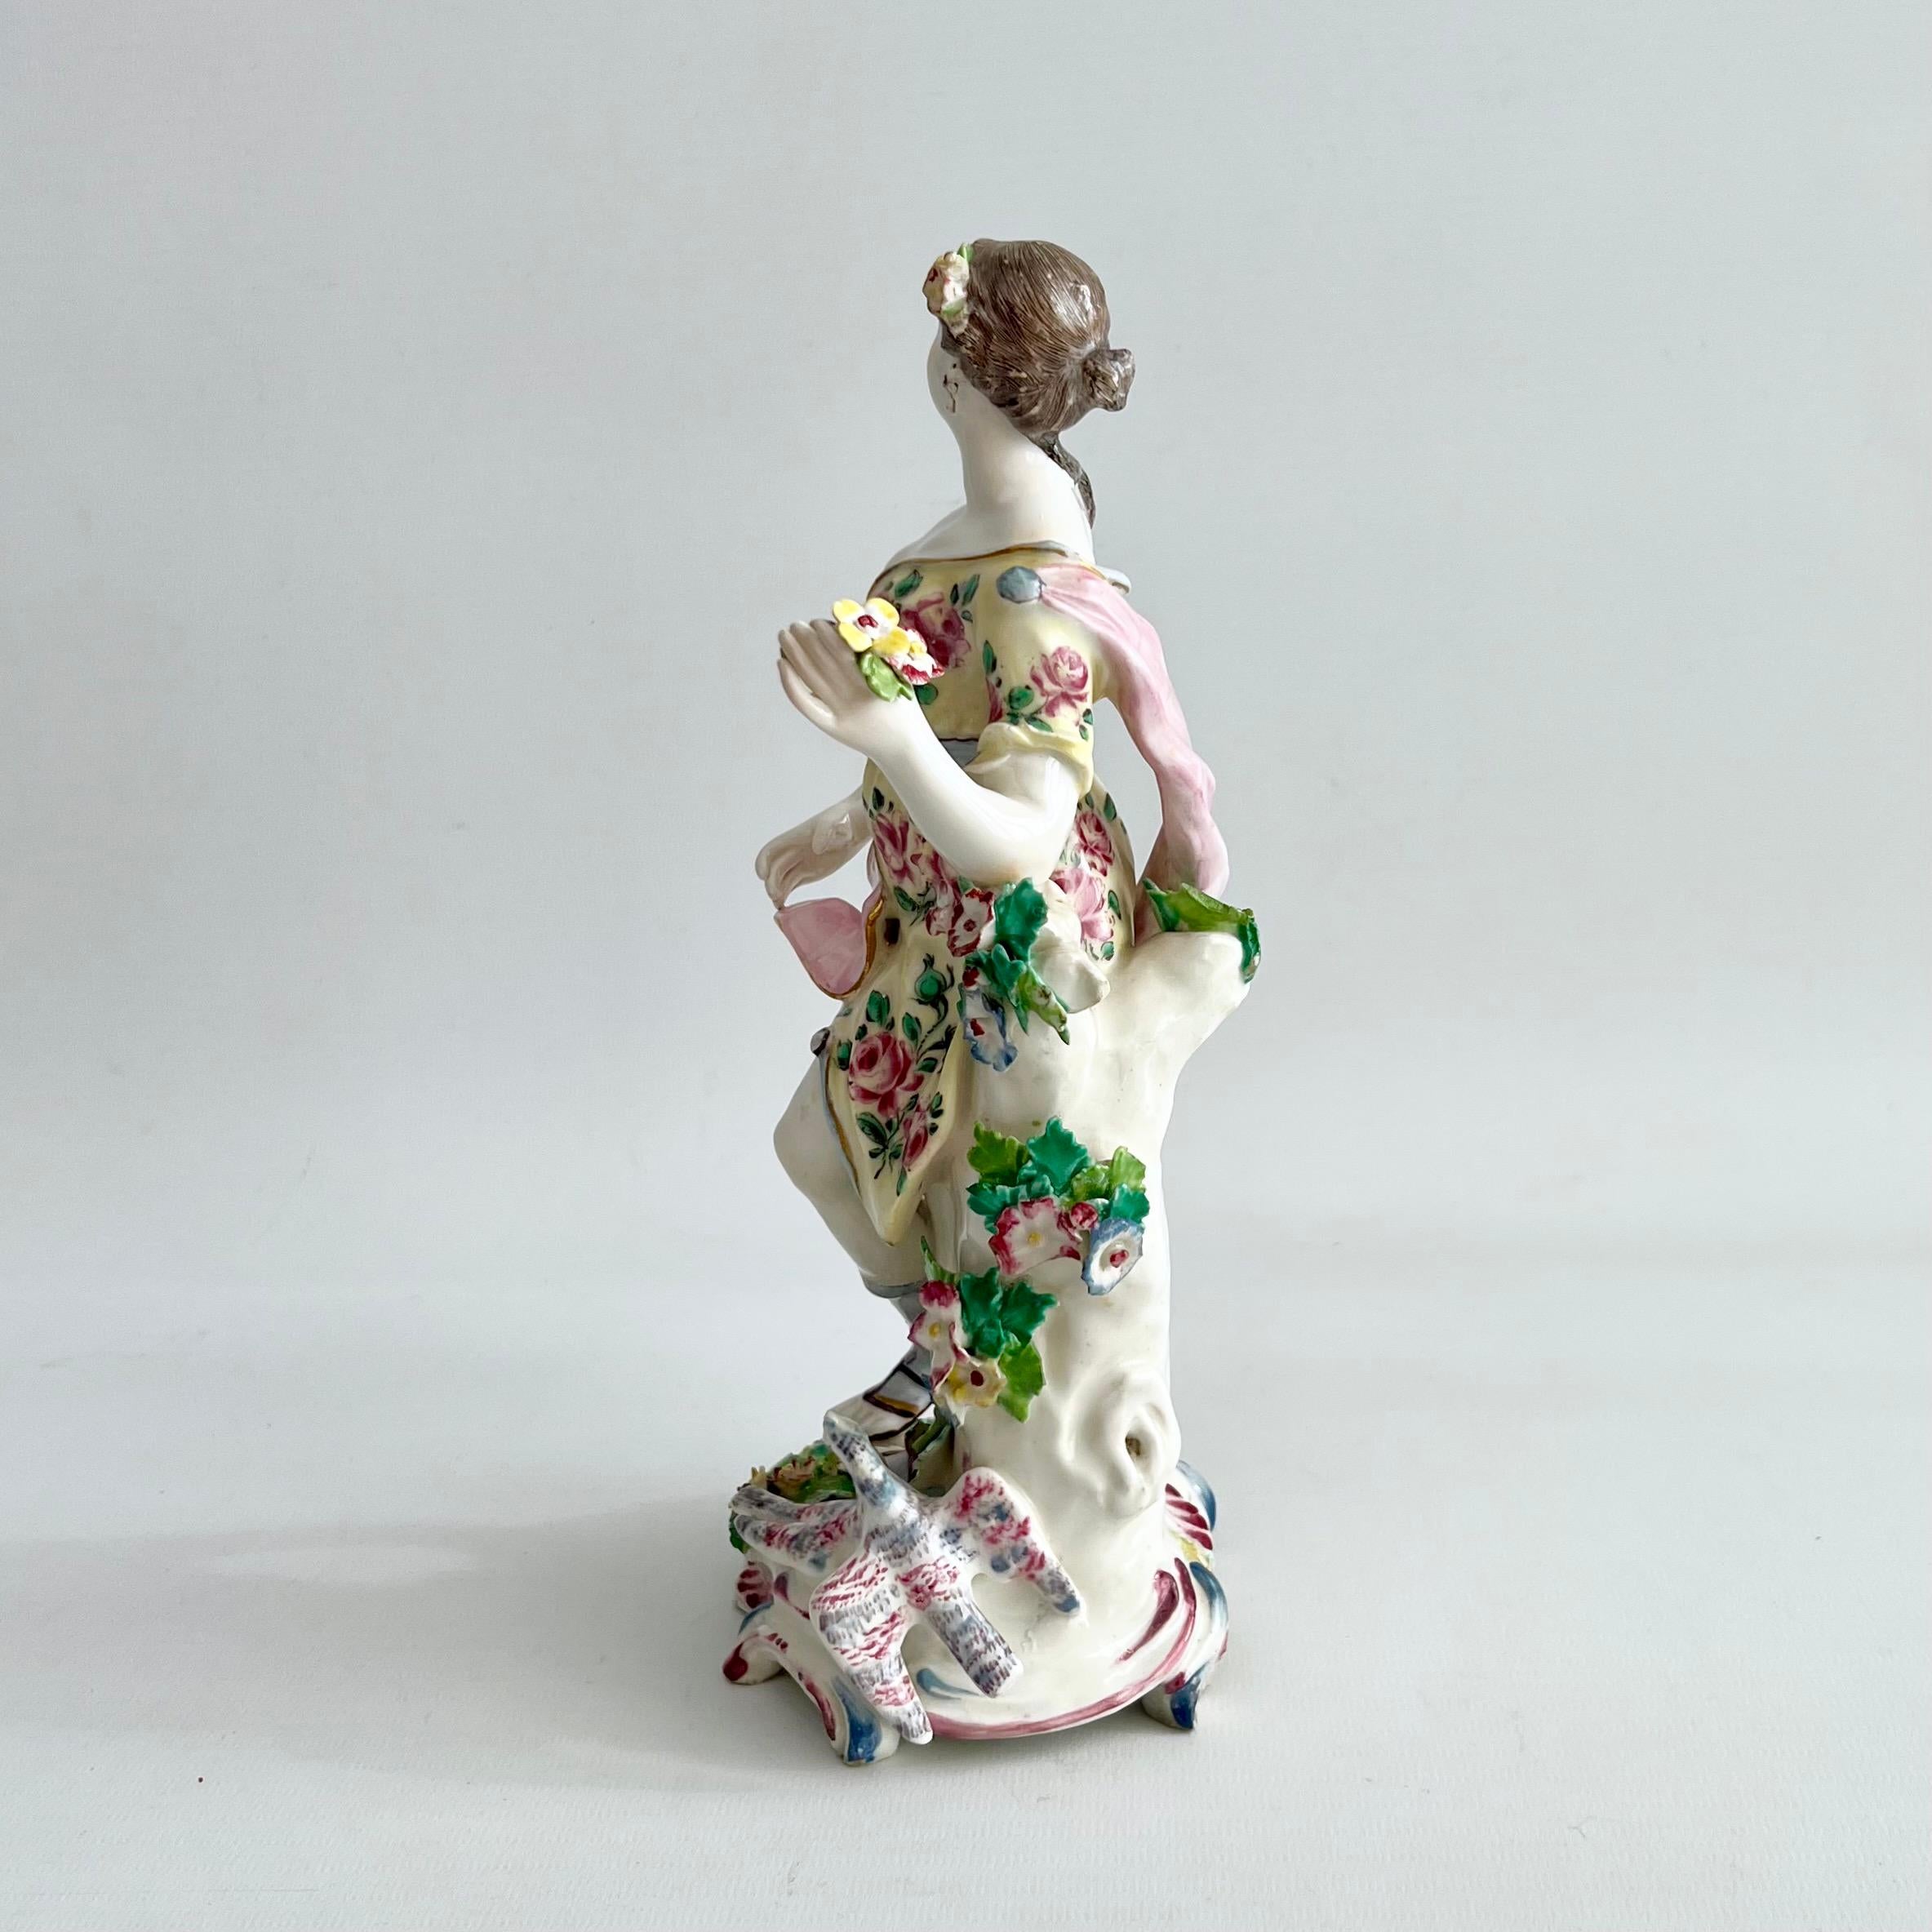 Il s'agit d'une rare et belle figure de Vénus avec deux colombes, réalisée par la manufacture de porcelaine de l'arc entre 1756 et 1764. Nous voyons Vénus debout, tenant sa robe d'une main, un bouquet de fleurs dans l'autre. L'un de ses seins est